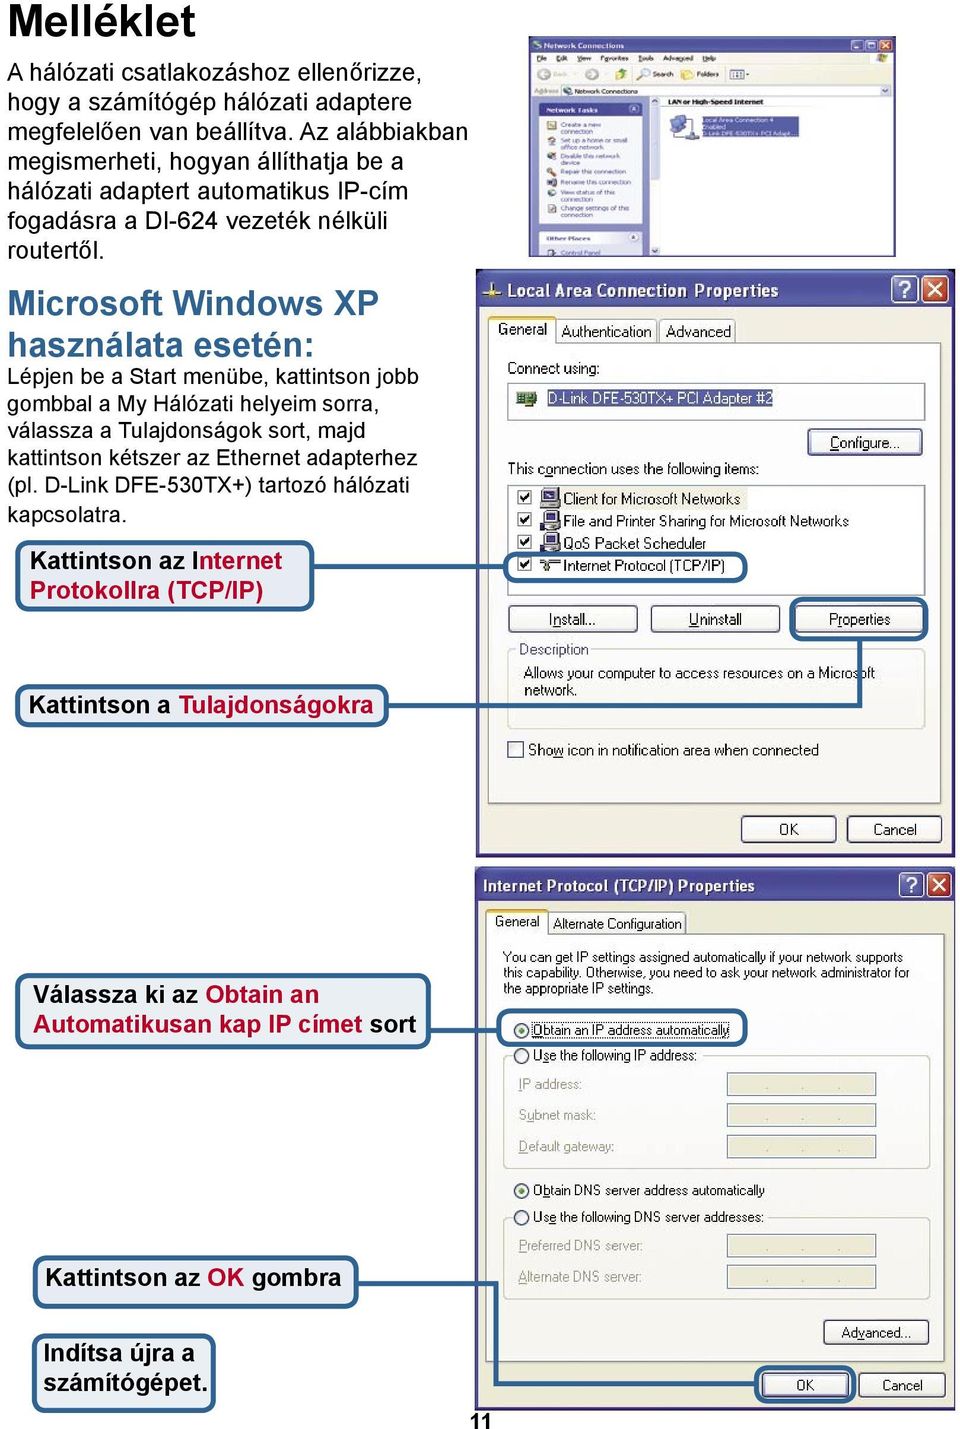 Microsoft Windows XP használata esetén: Lépjen be a Start menübe, kattintson jobb gombbal a My Hálózati helyeim sorra, válassza a Tulajdonságok sort, majd